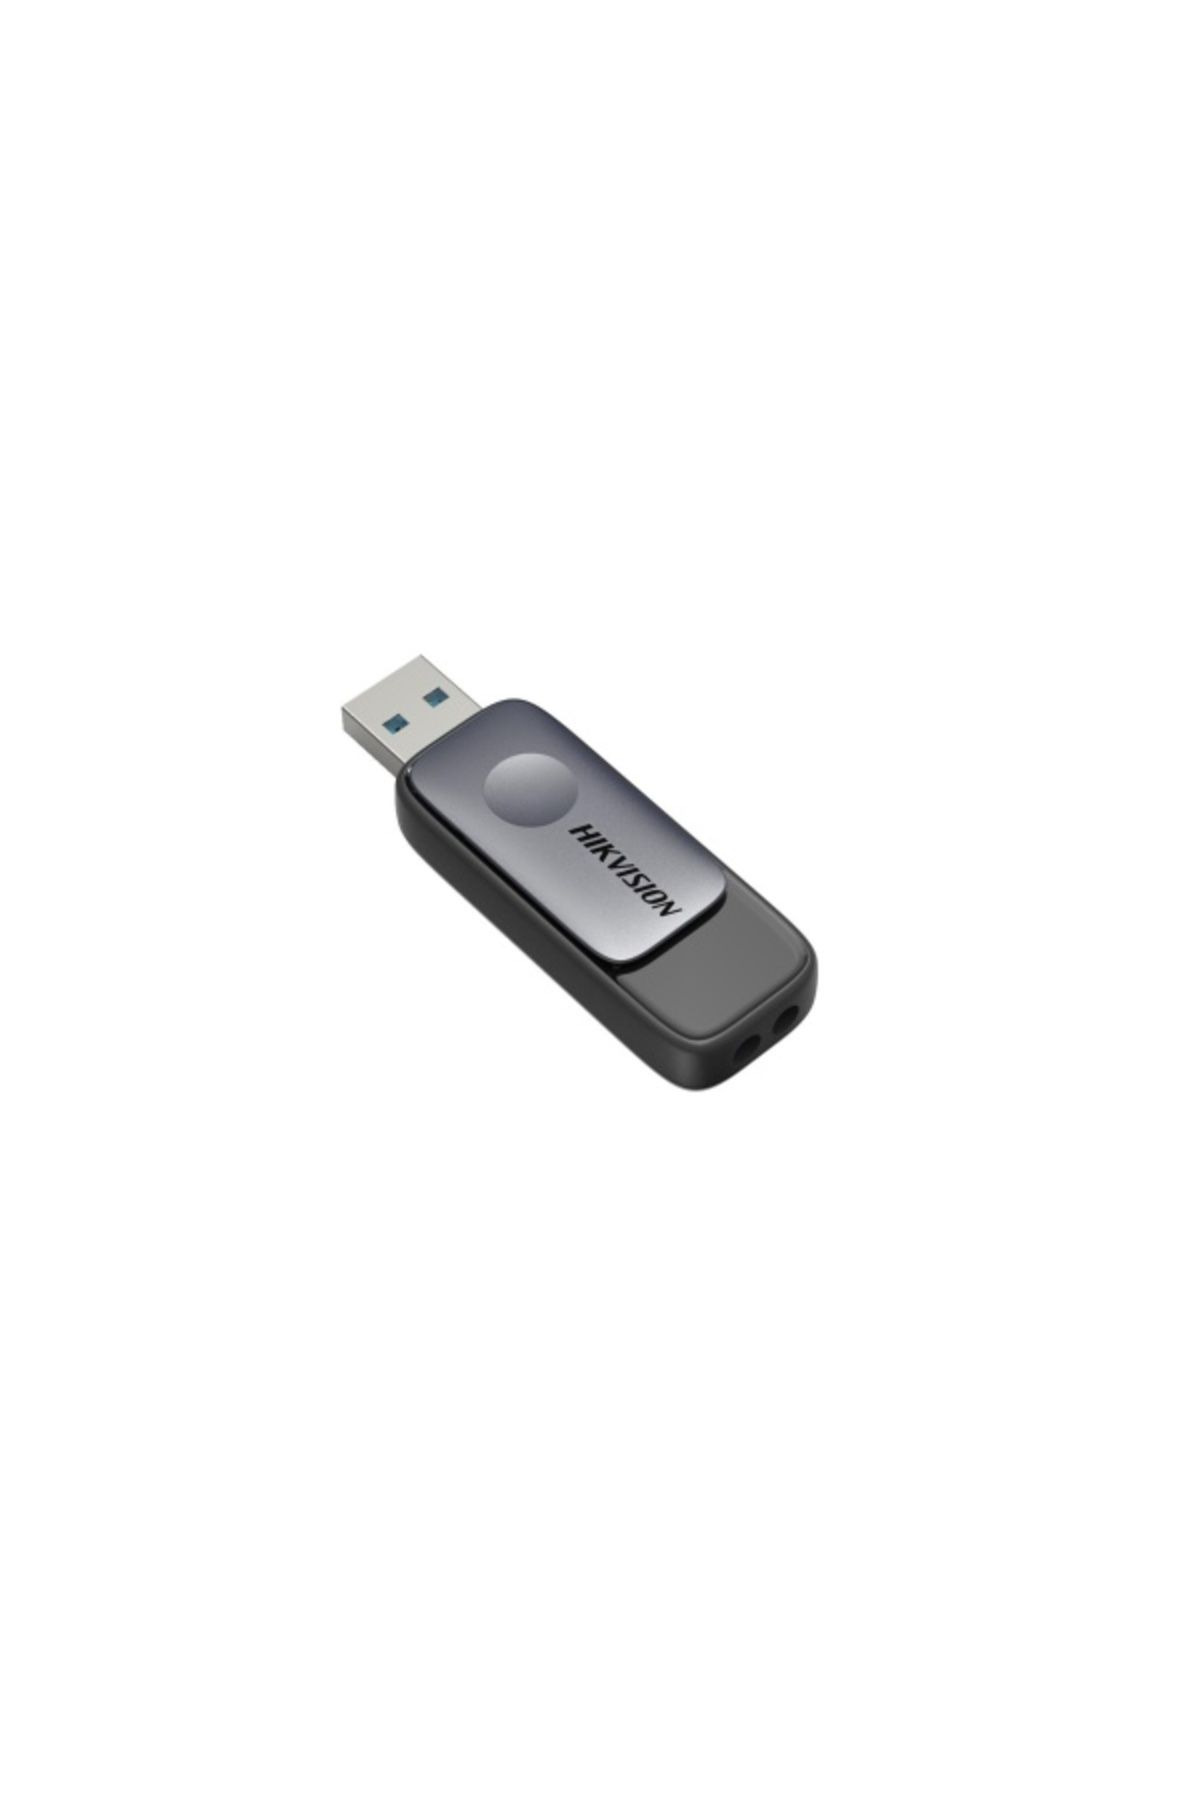 Hikvision 16GB USB3.2 HS-USB-M210S-16G Sürgülü Siyah Flash Bellek